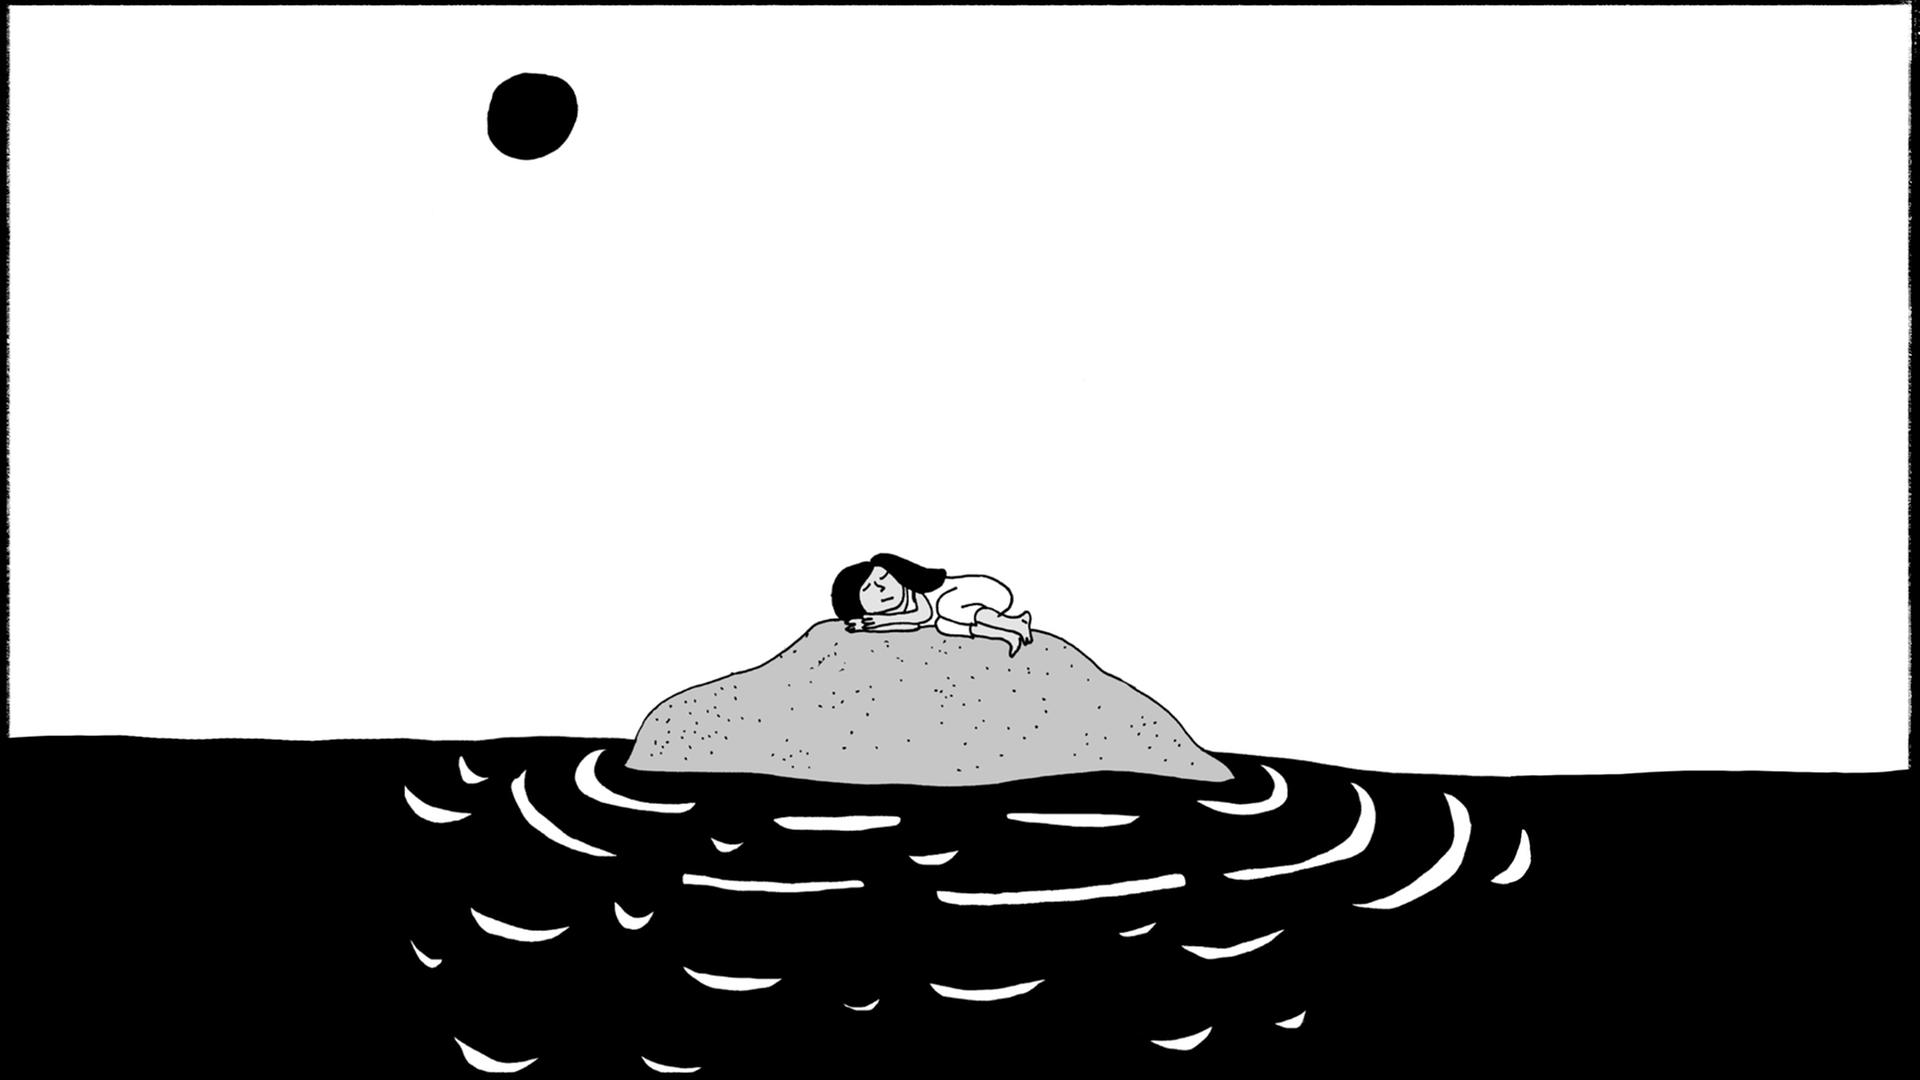 Illustration aus der Graphic Novel von Liv Strömquist: Eine Person liegt seitlich eingerollt auf einer sehr kleinen Insel im Wasser.